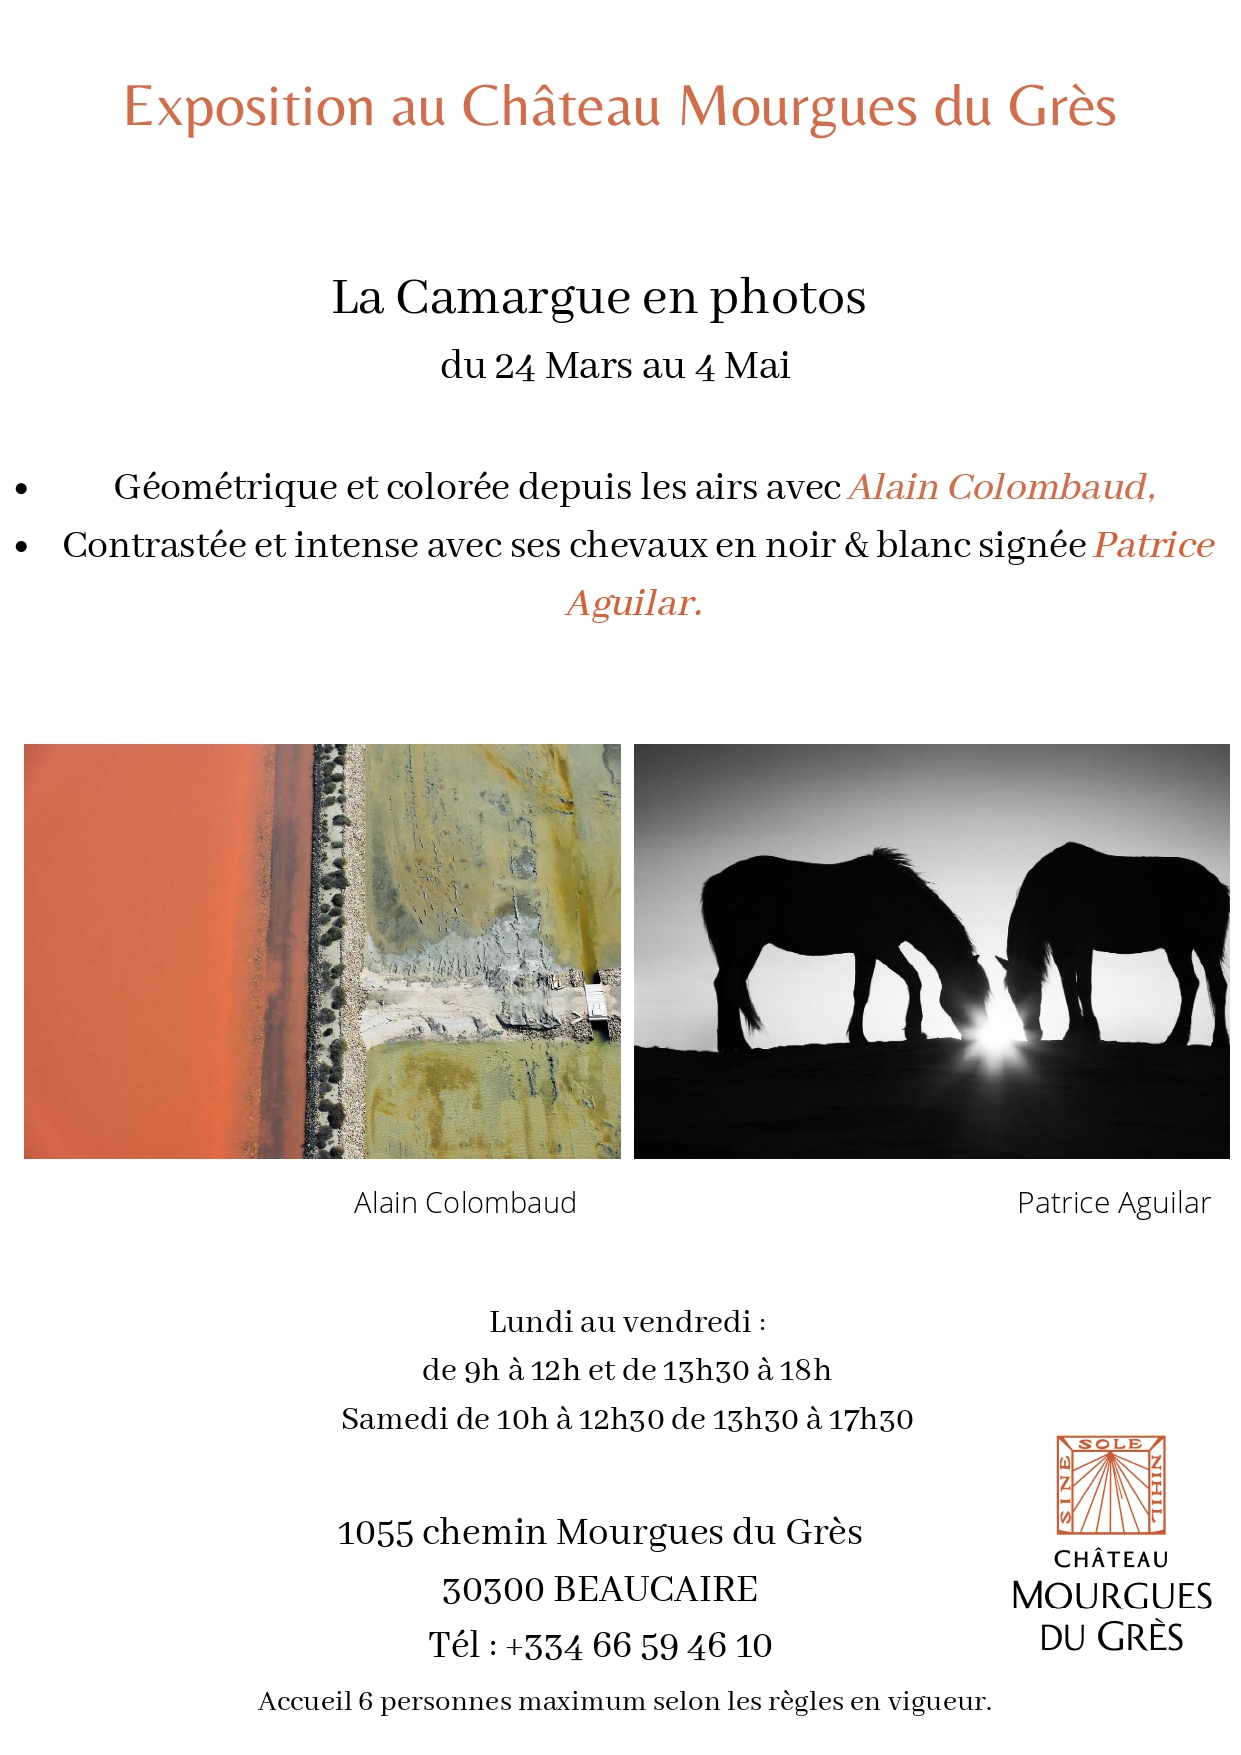 Gard - La Camargue en photos au Château Mourgues du Grès